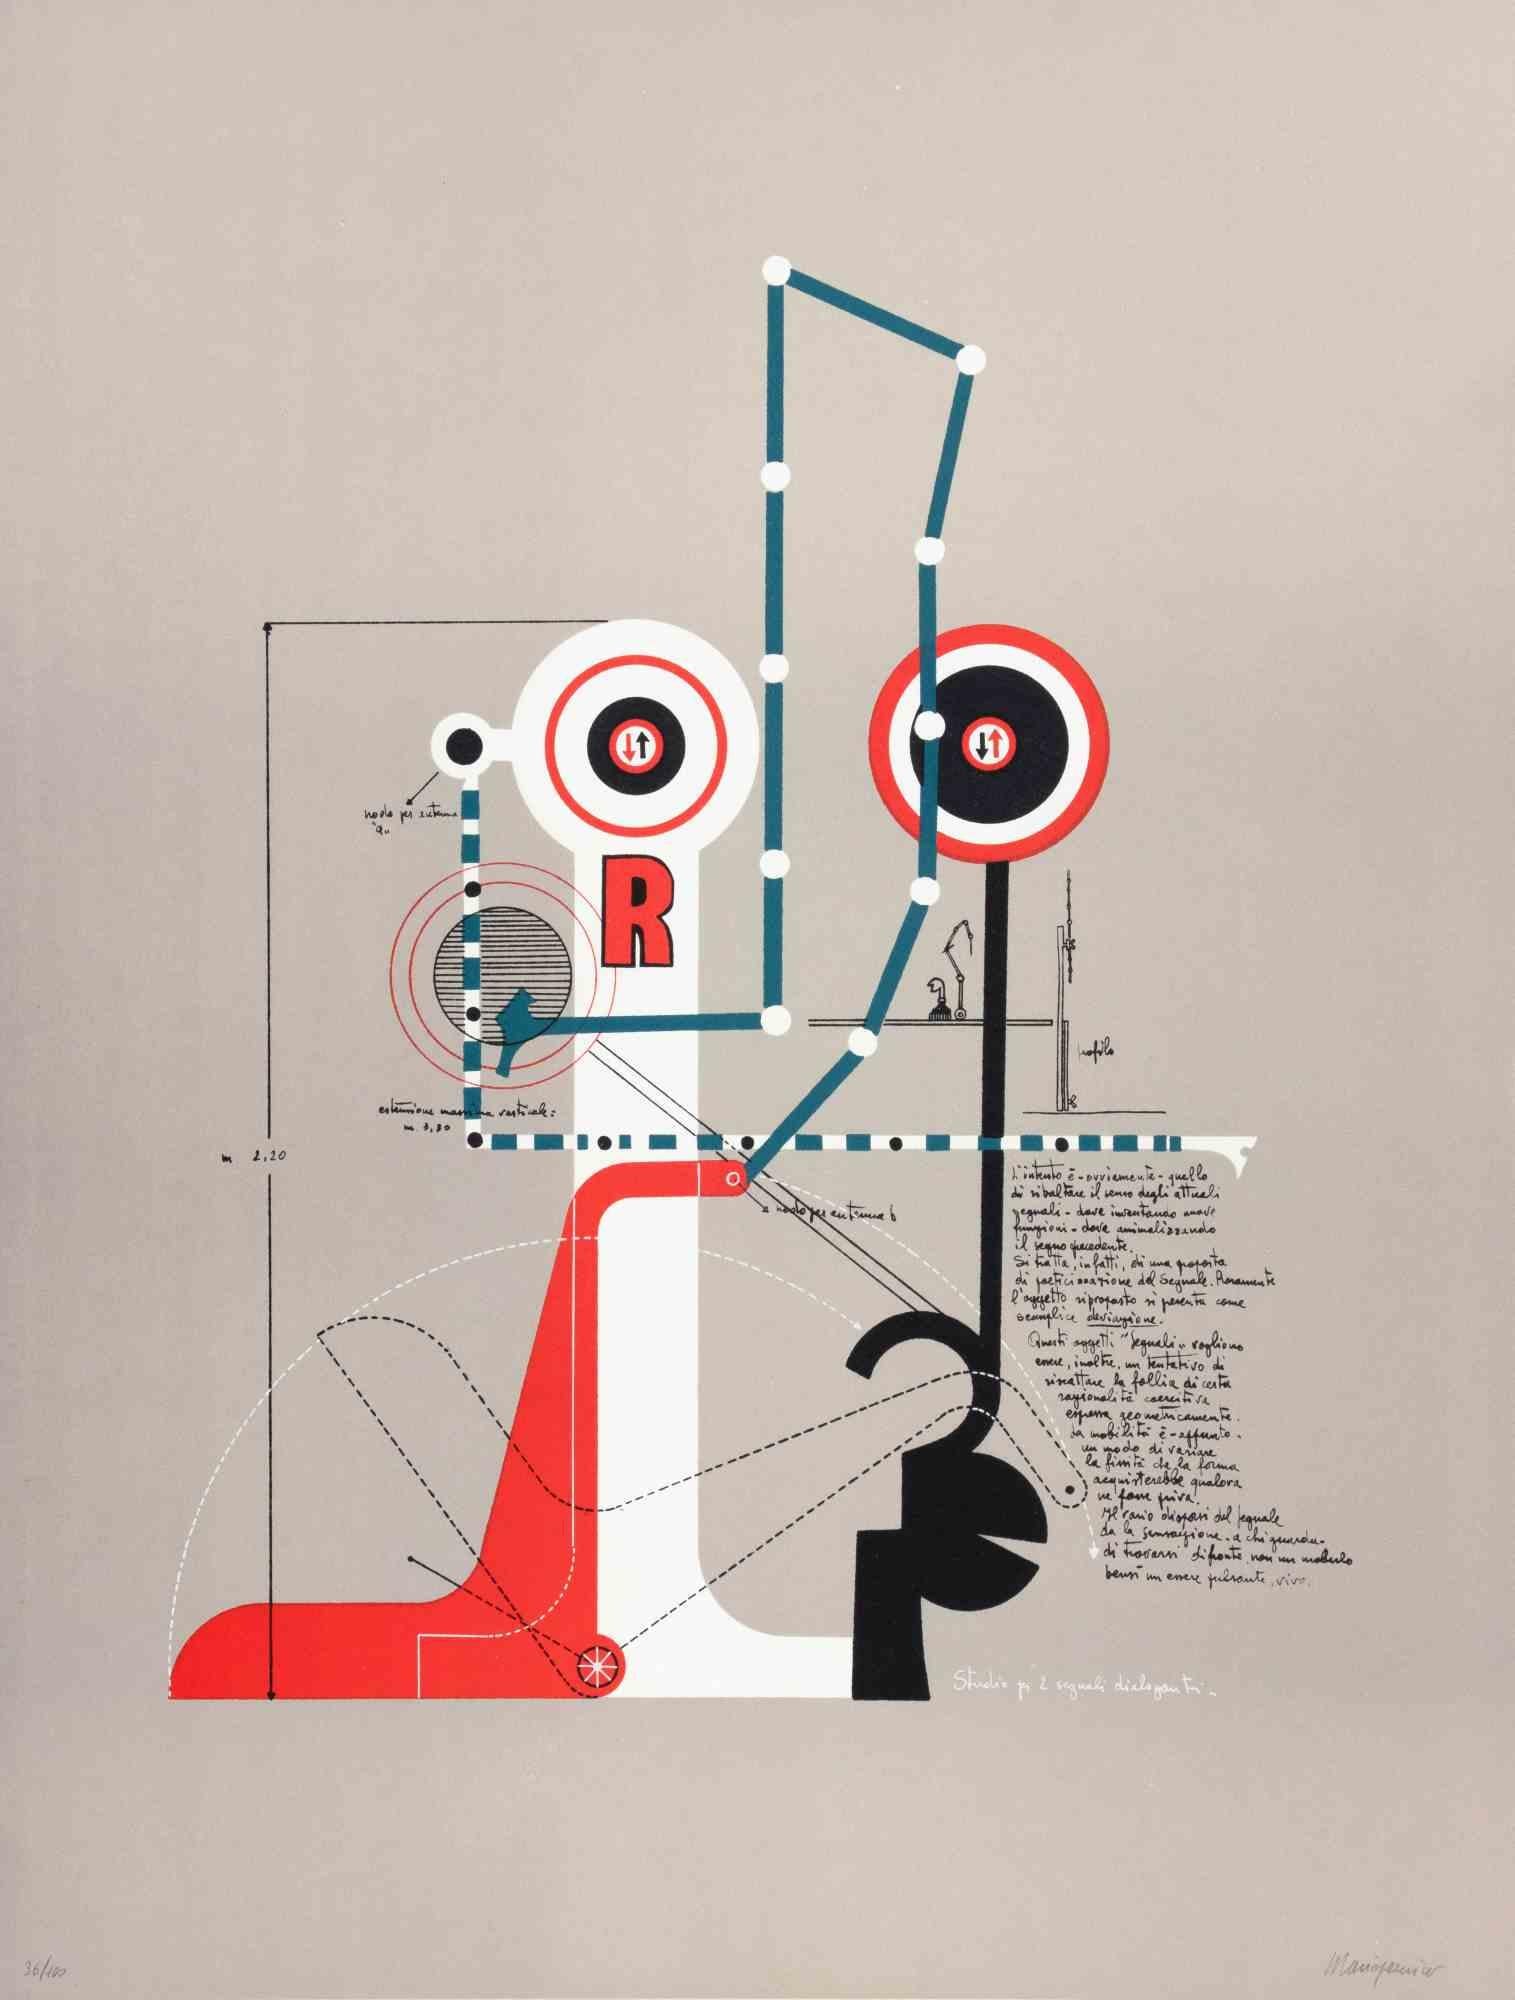 Étude pour deux signaux communicants est une œuvre d'art contemporain réalisée par Mario Persico dans les années 1970.

Lithographie en couleurs mélangées

Titre dans la marge inférieure.

Signé à la main par l'artiste

Numéroté dans la marge